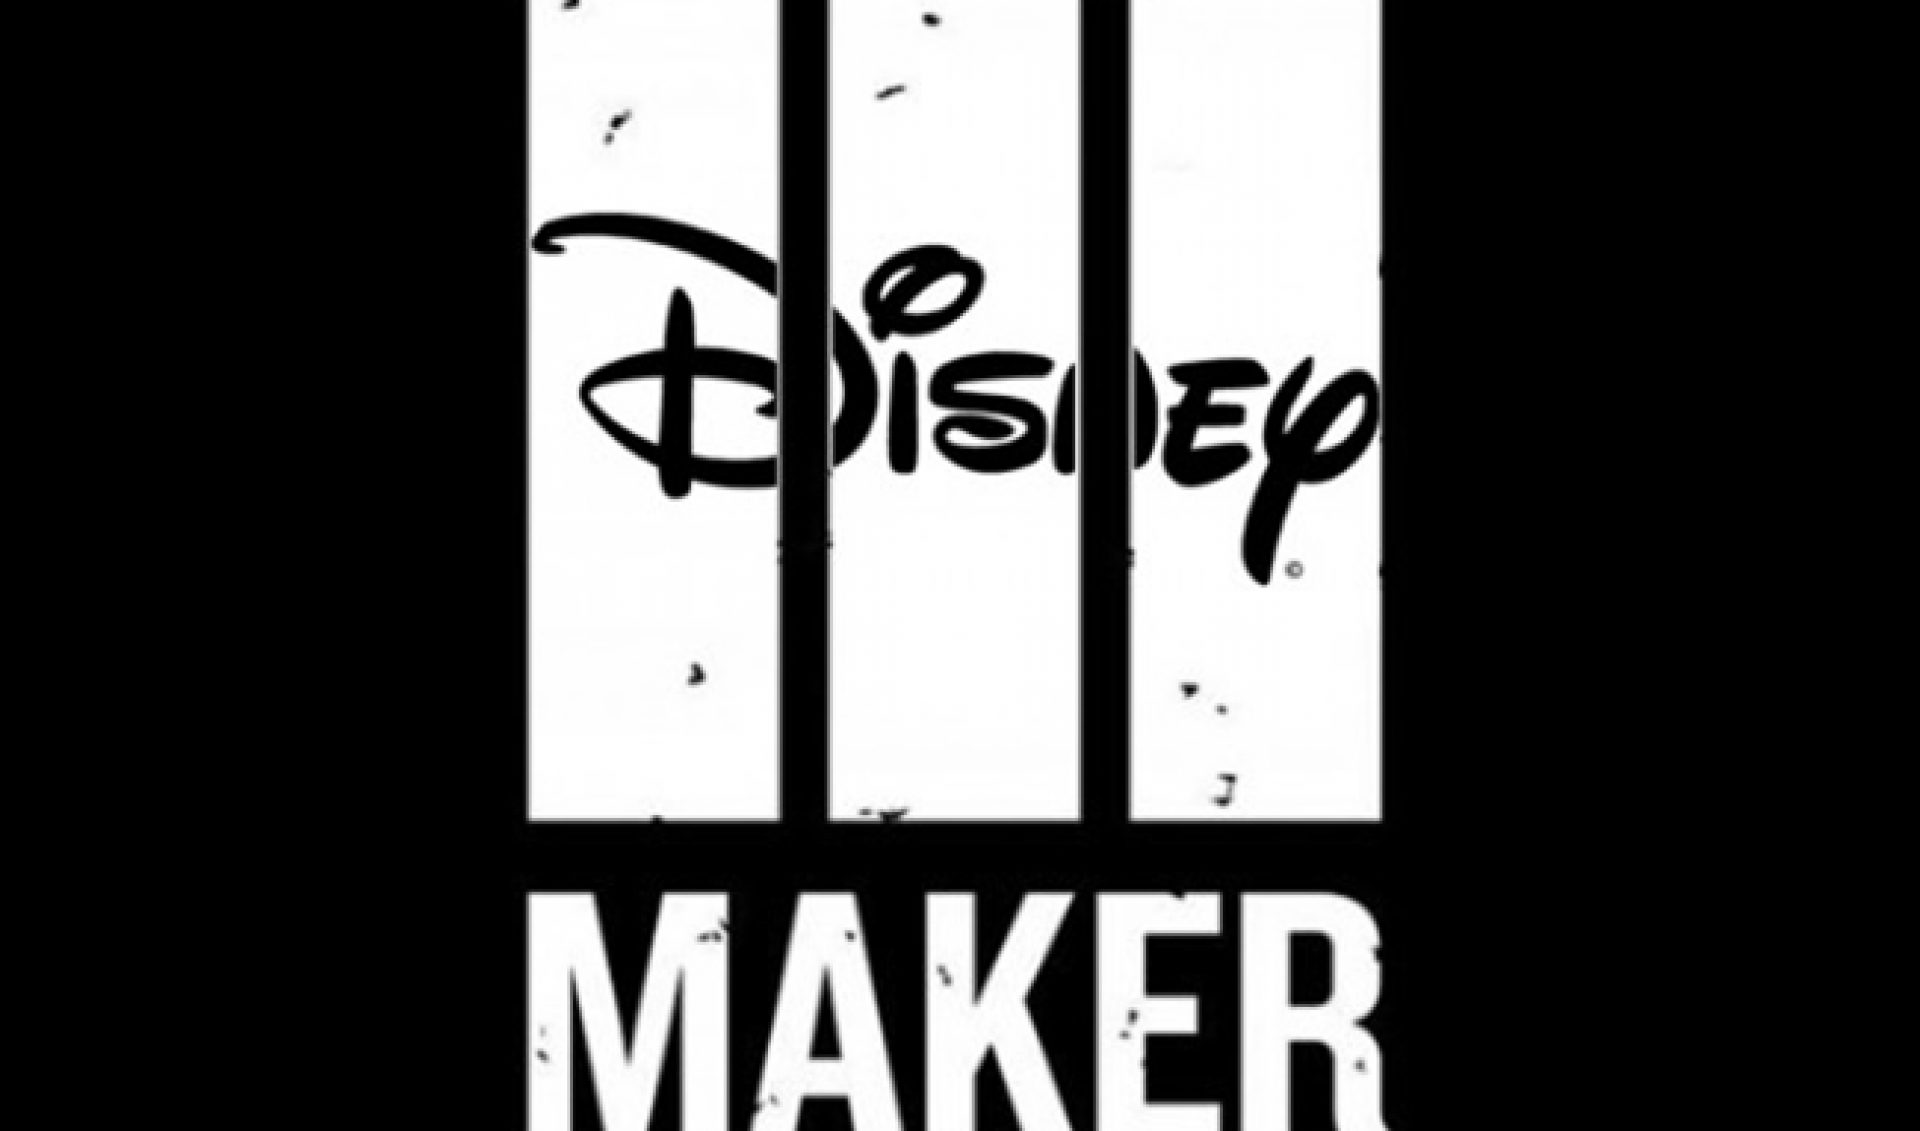 Disney To Buy Maker Studios For $500 To $950 Million